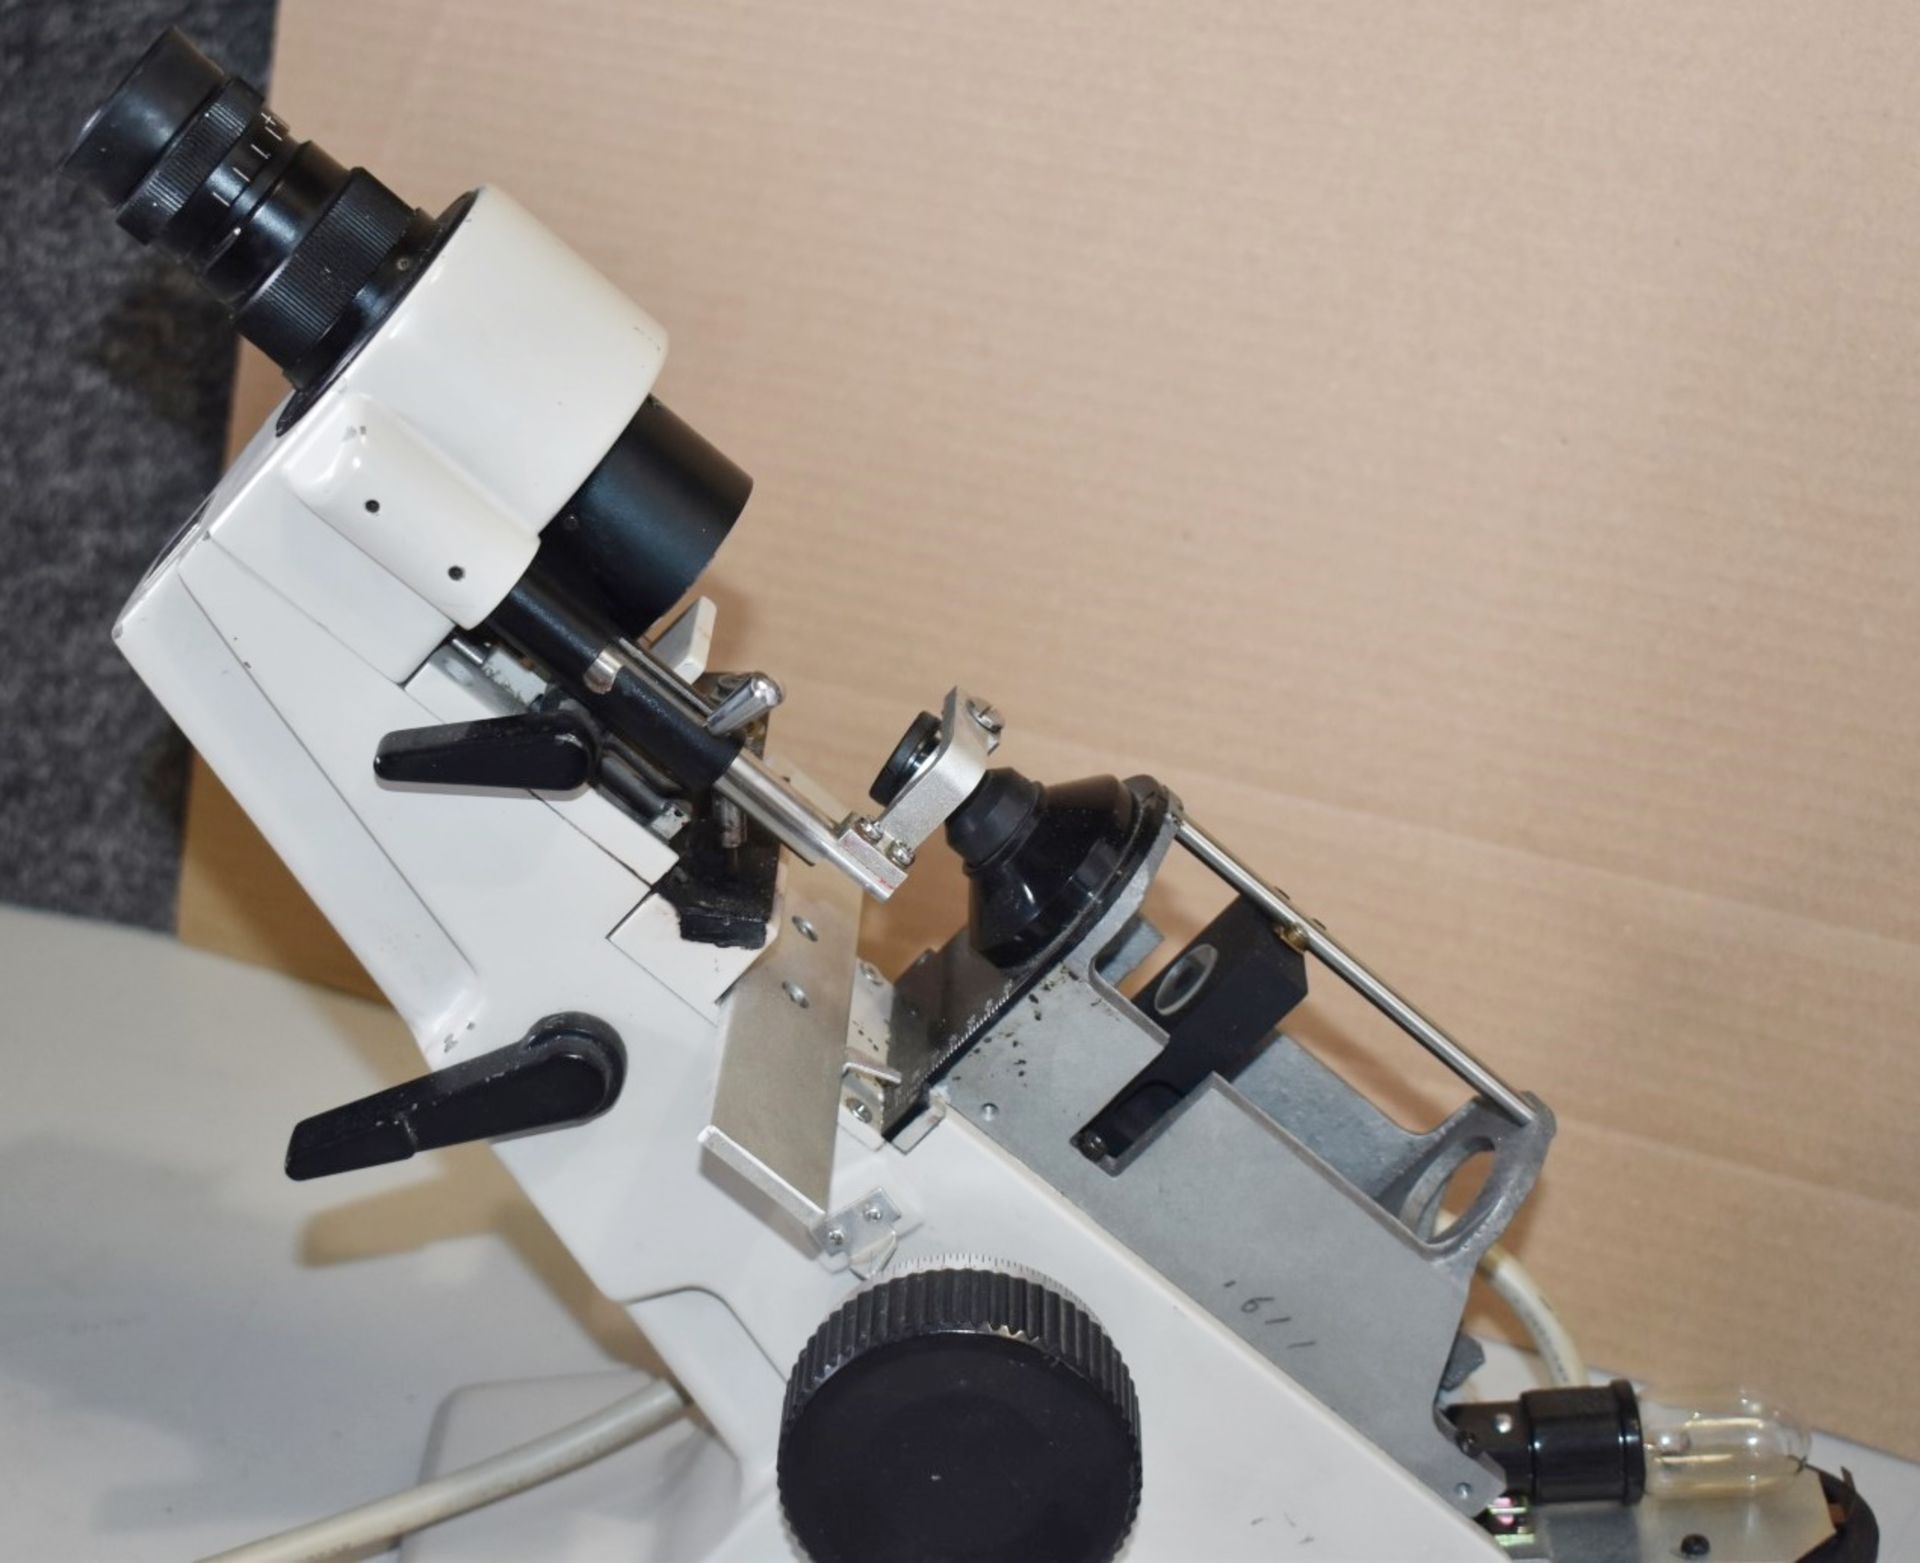 1 x Nidek Lens Meter - Model LM-100240 - Made in Japan - Ref: GTI141 - CL645 - Location: - Image 7 of 11